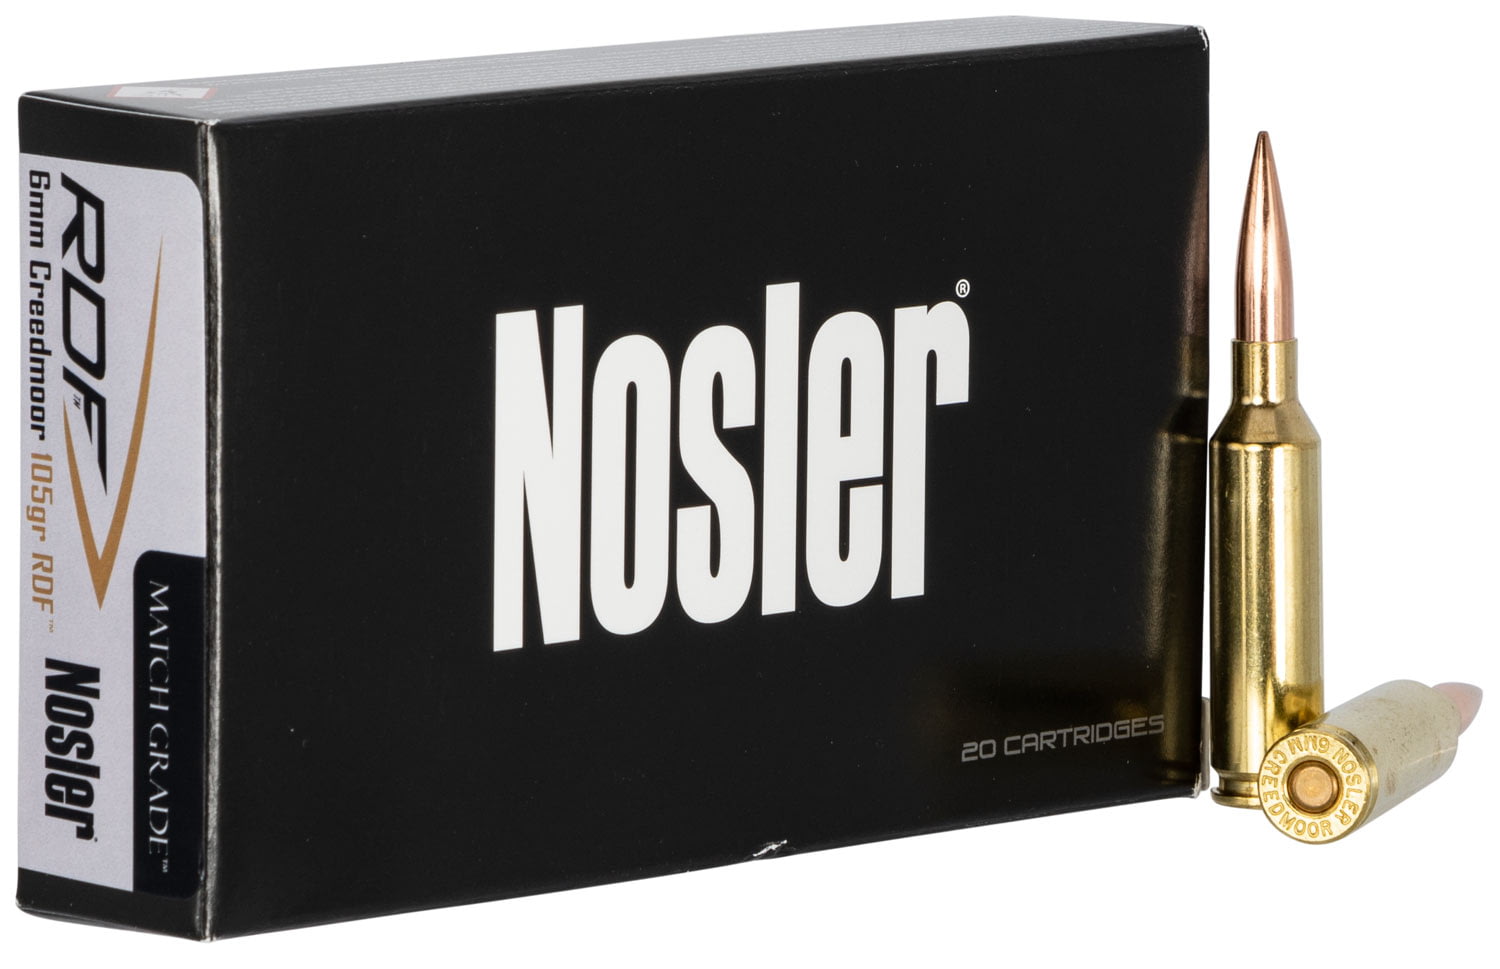 Nosler 6mm Creedmoor Round Nose Flat 105 grain Brass Cased Rifle Ammunition